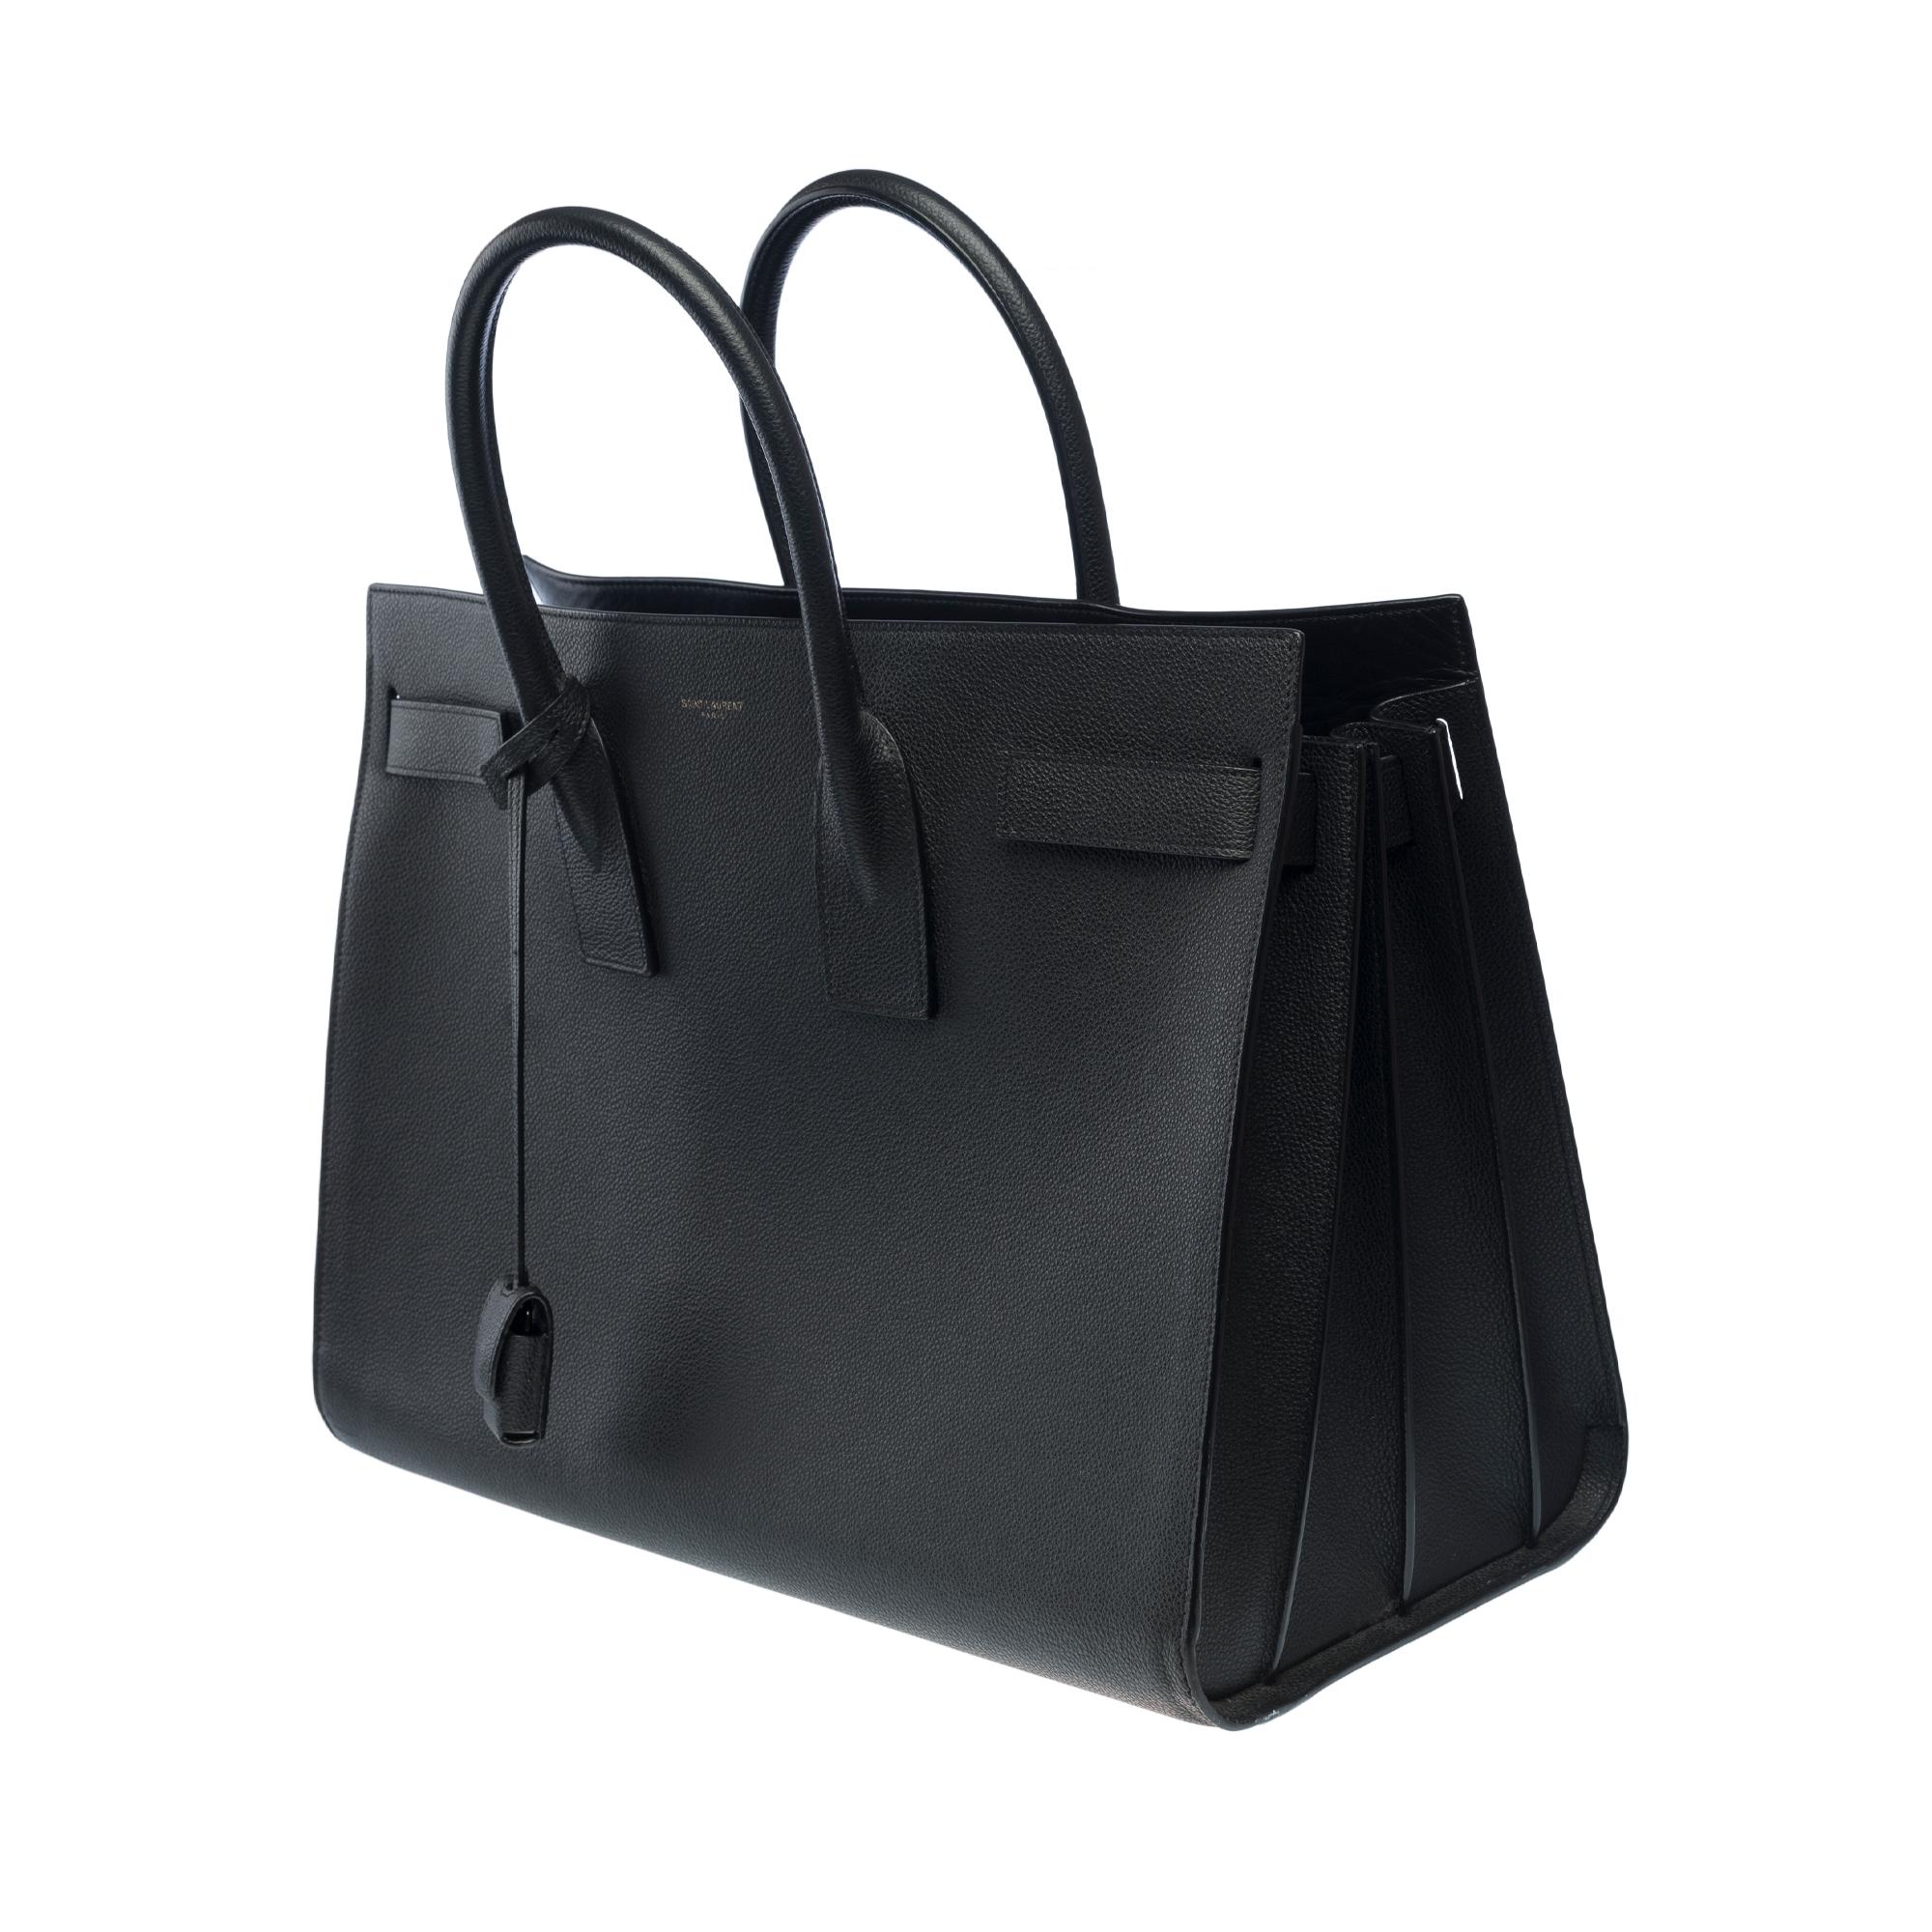 Saint Laurent Sac de Jour Gro�ße Größe Handtasche mit schwarzem, gemasertem Lederarmband für Damen oder Herren